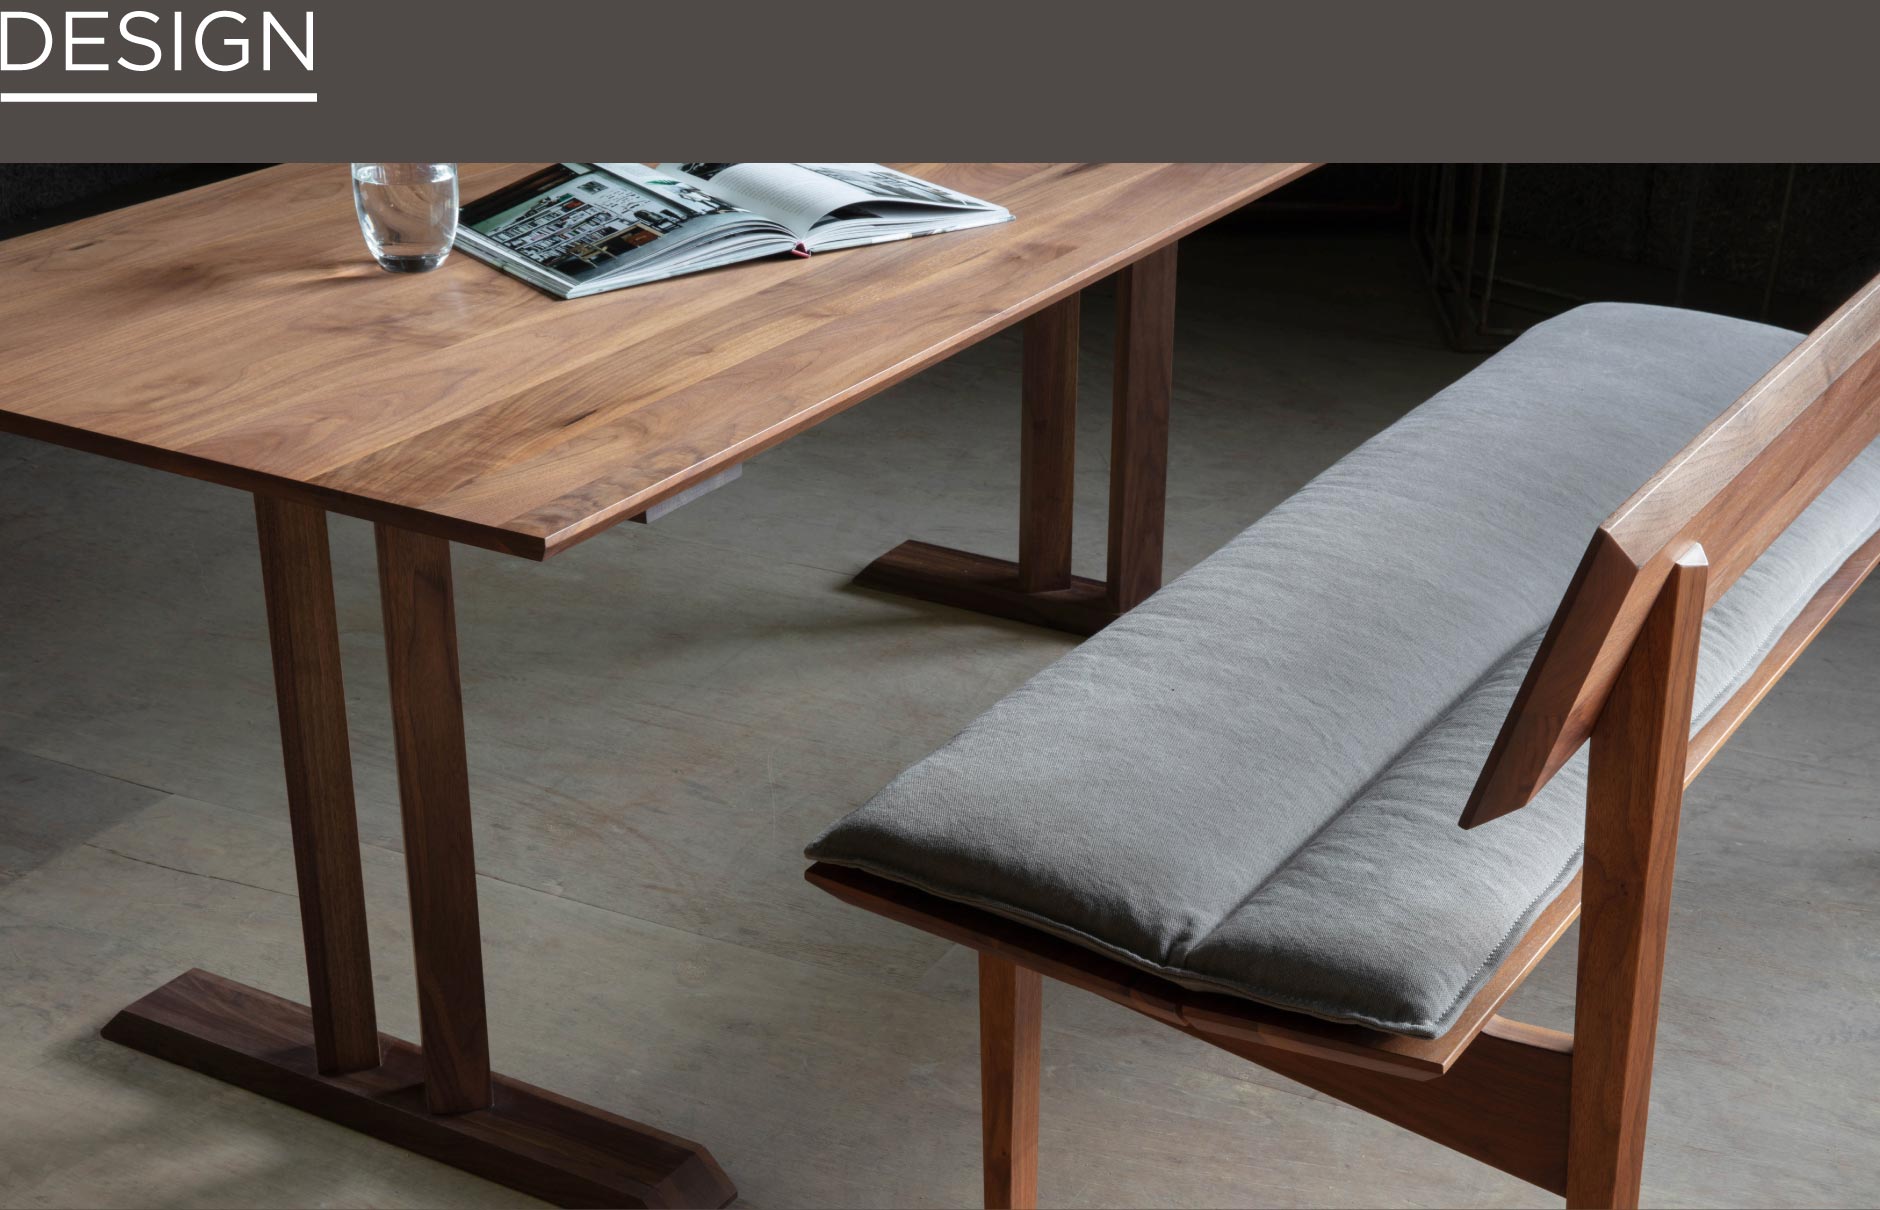 SOLID福岡の家具の中でも出入りのしやすいT字脚ダイニングテーブル。見る角度によって現れる陰影が美しいスタイリッシュなデザイン。